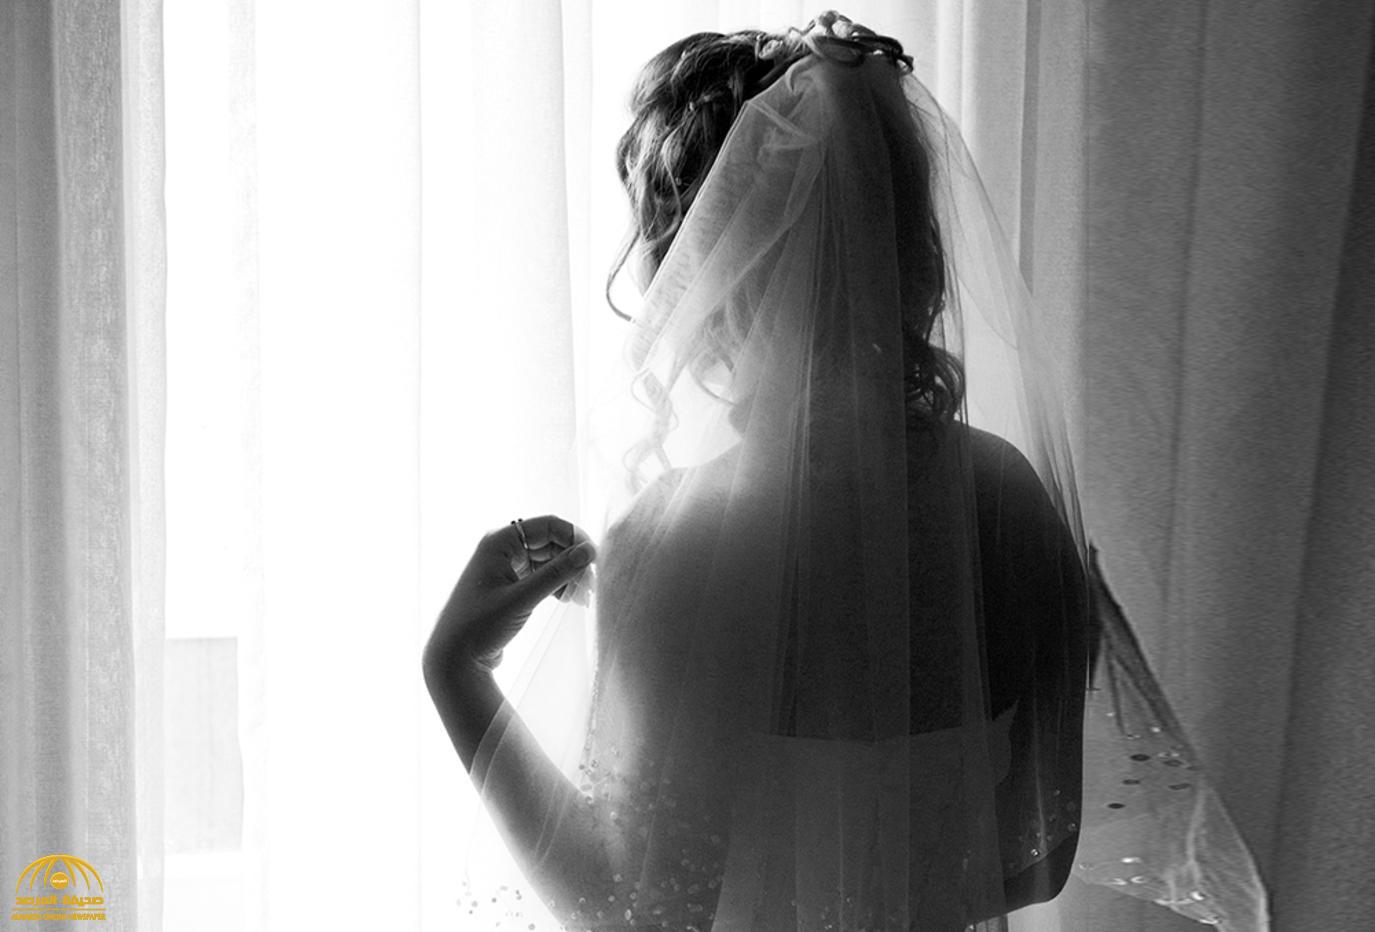 مصر:  العثور على عروس مذبوحة بعد 72 ساعة من زفافها .. والزوج يوجه "اتهامات" للجن